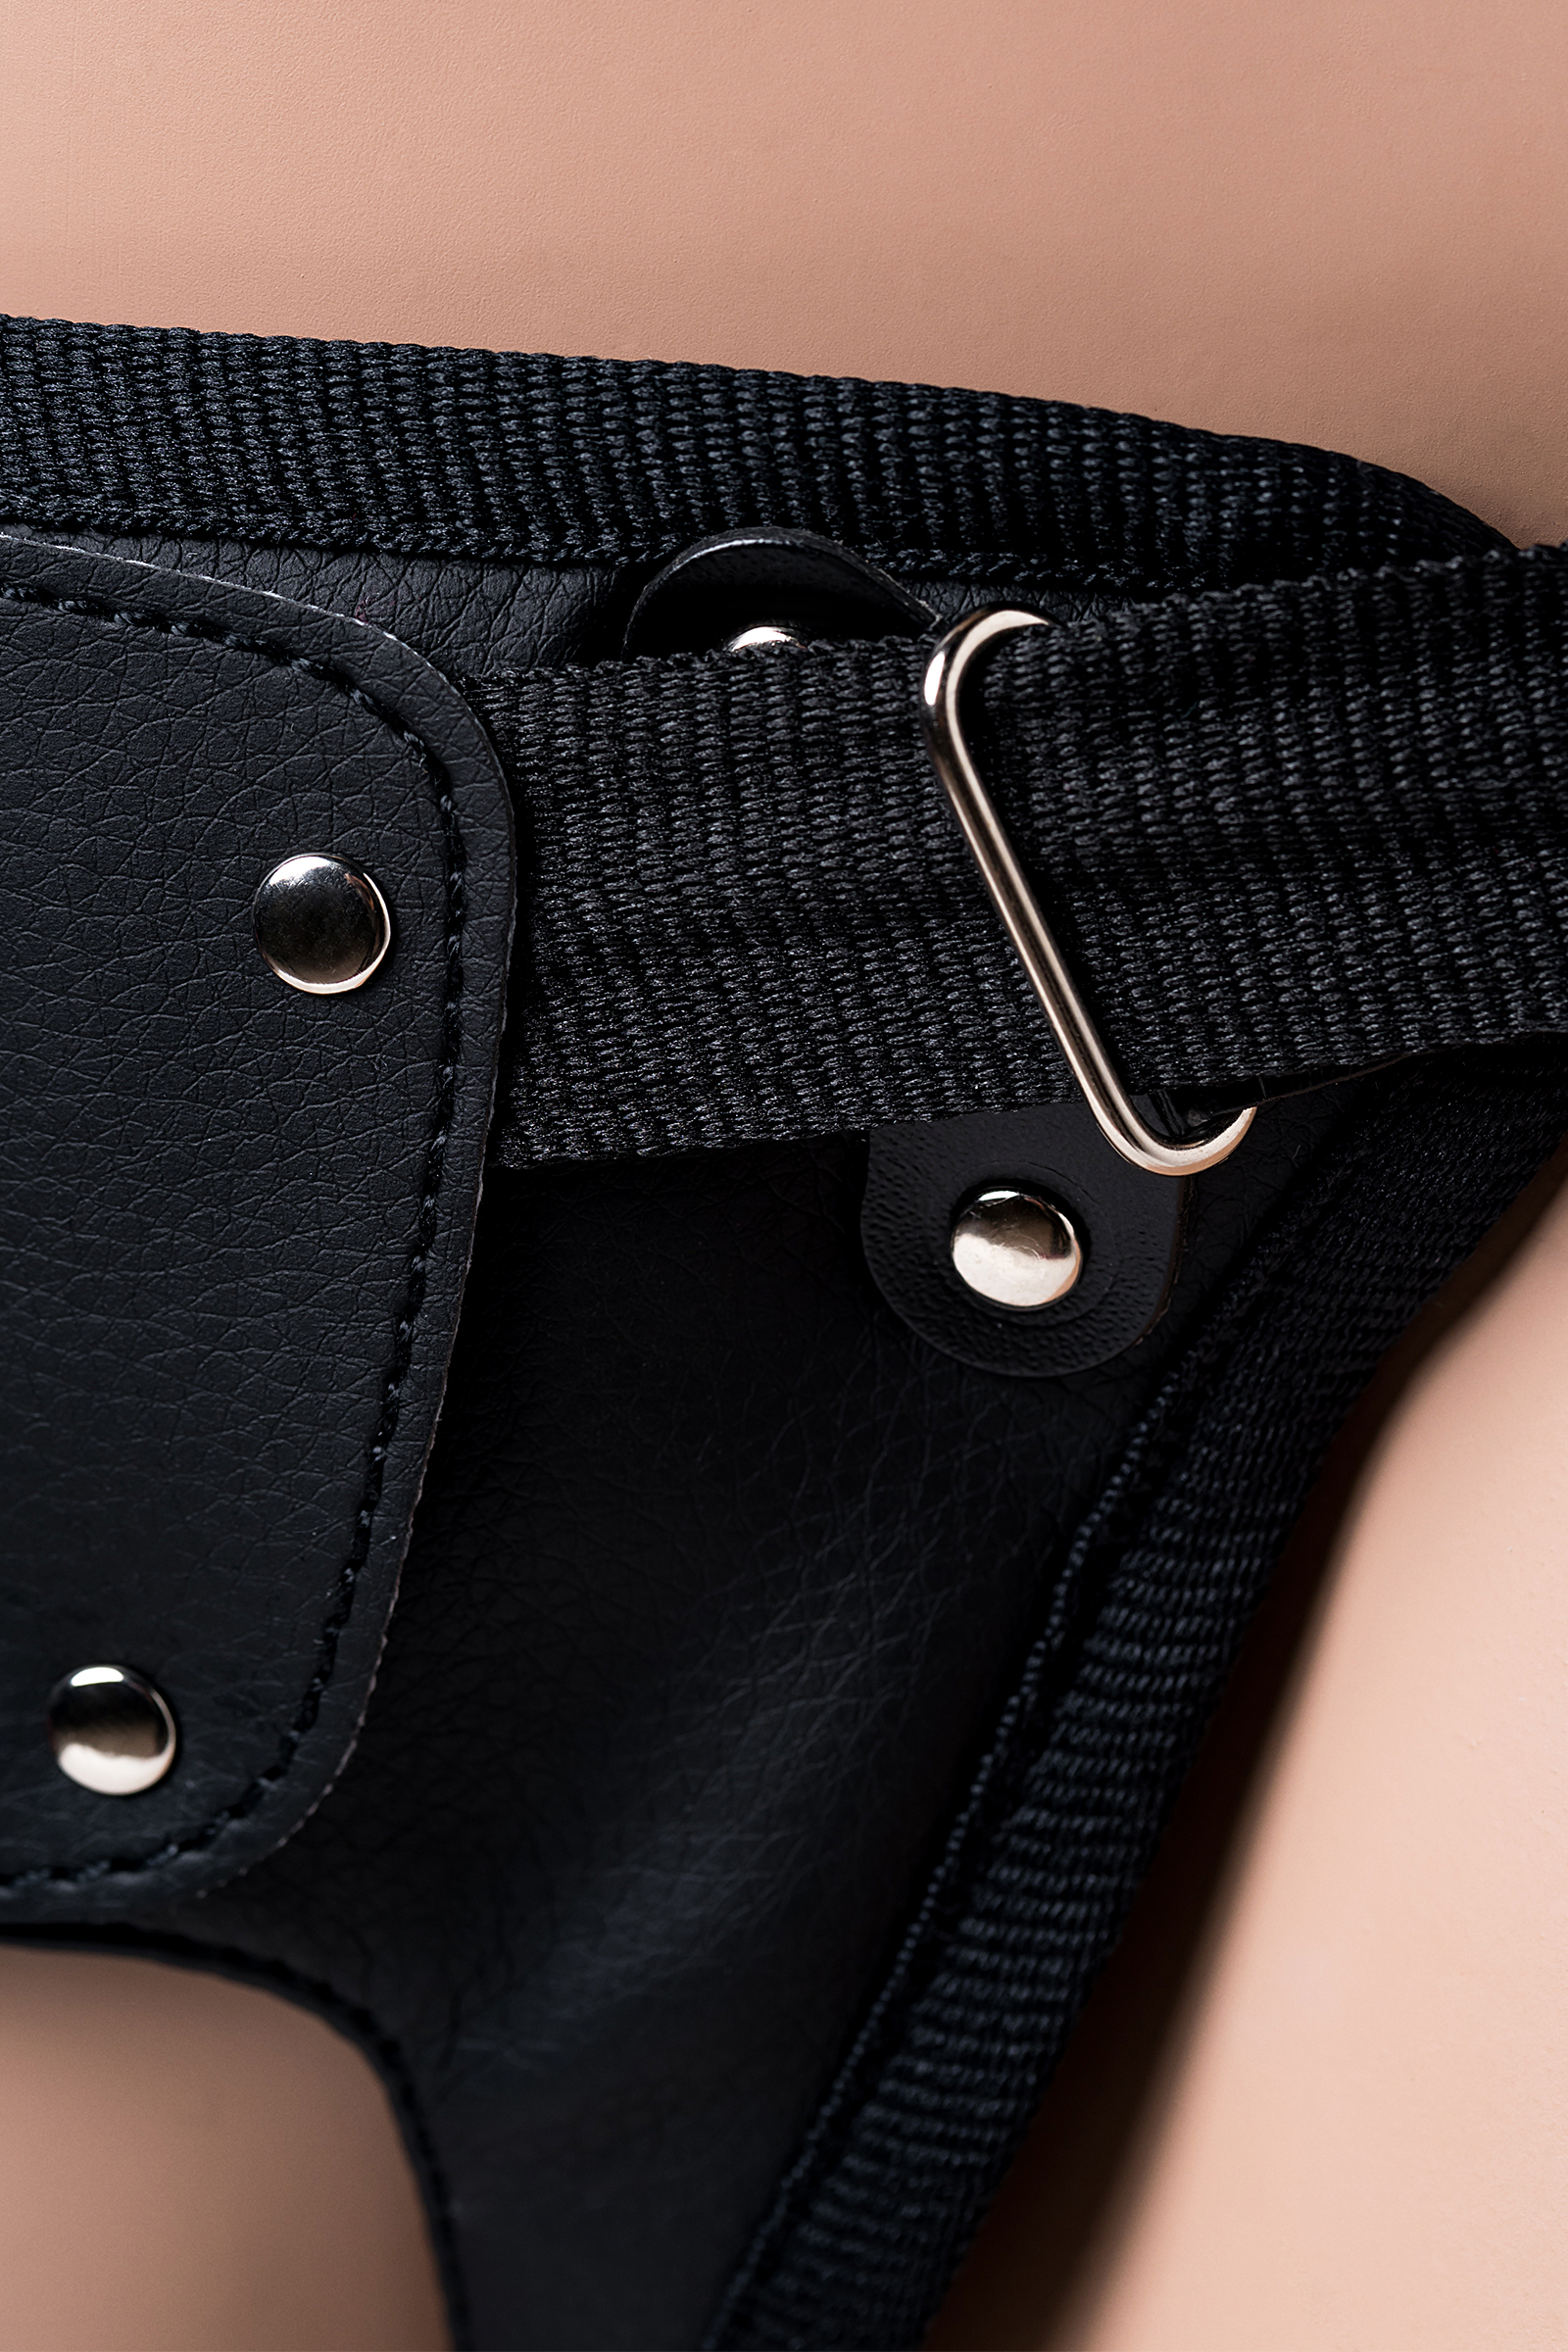 Страпон на креплении LoveToy с поясом Harness, реалистичный, neoskin, телесный, 20 см. Фото N6